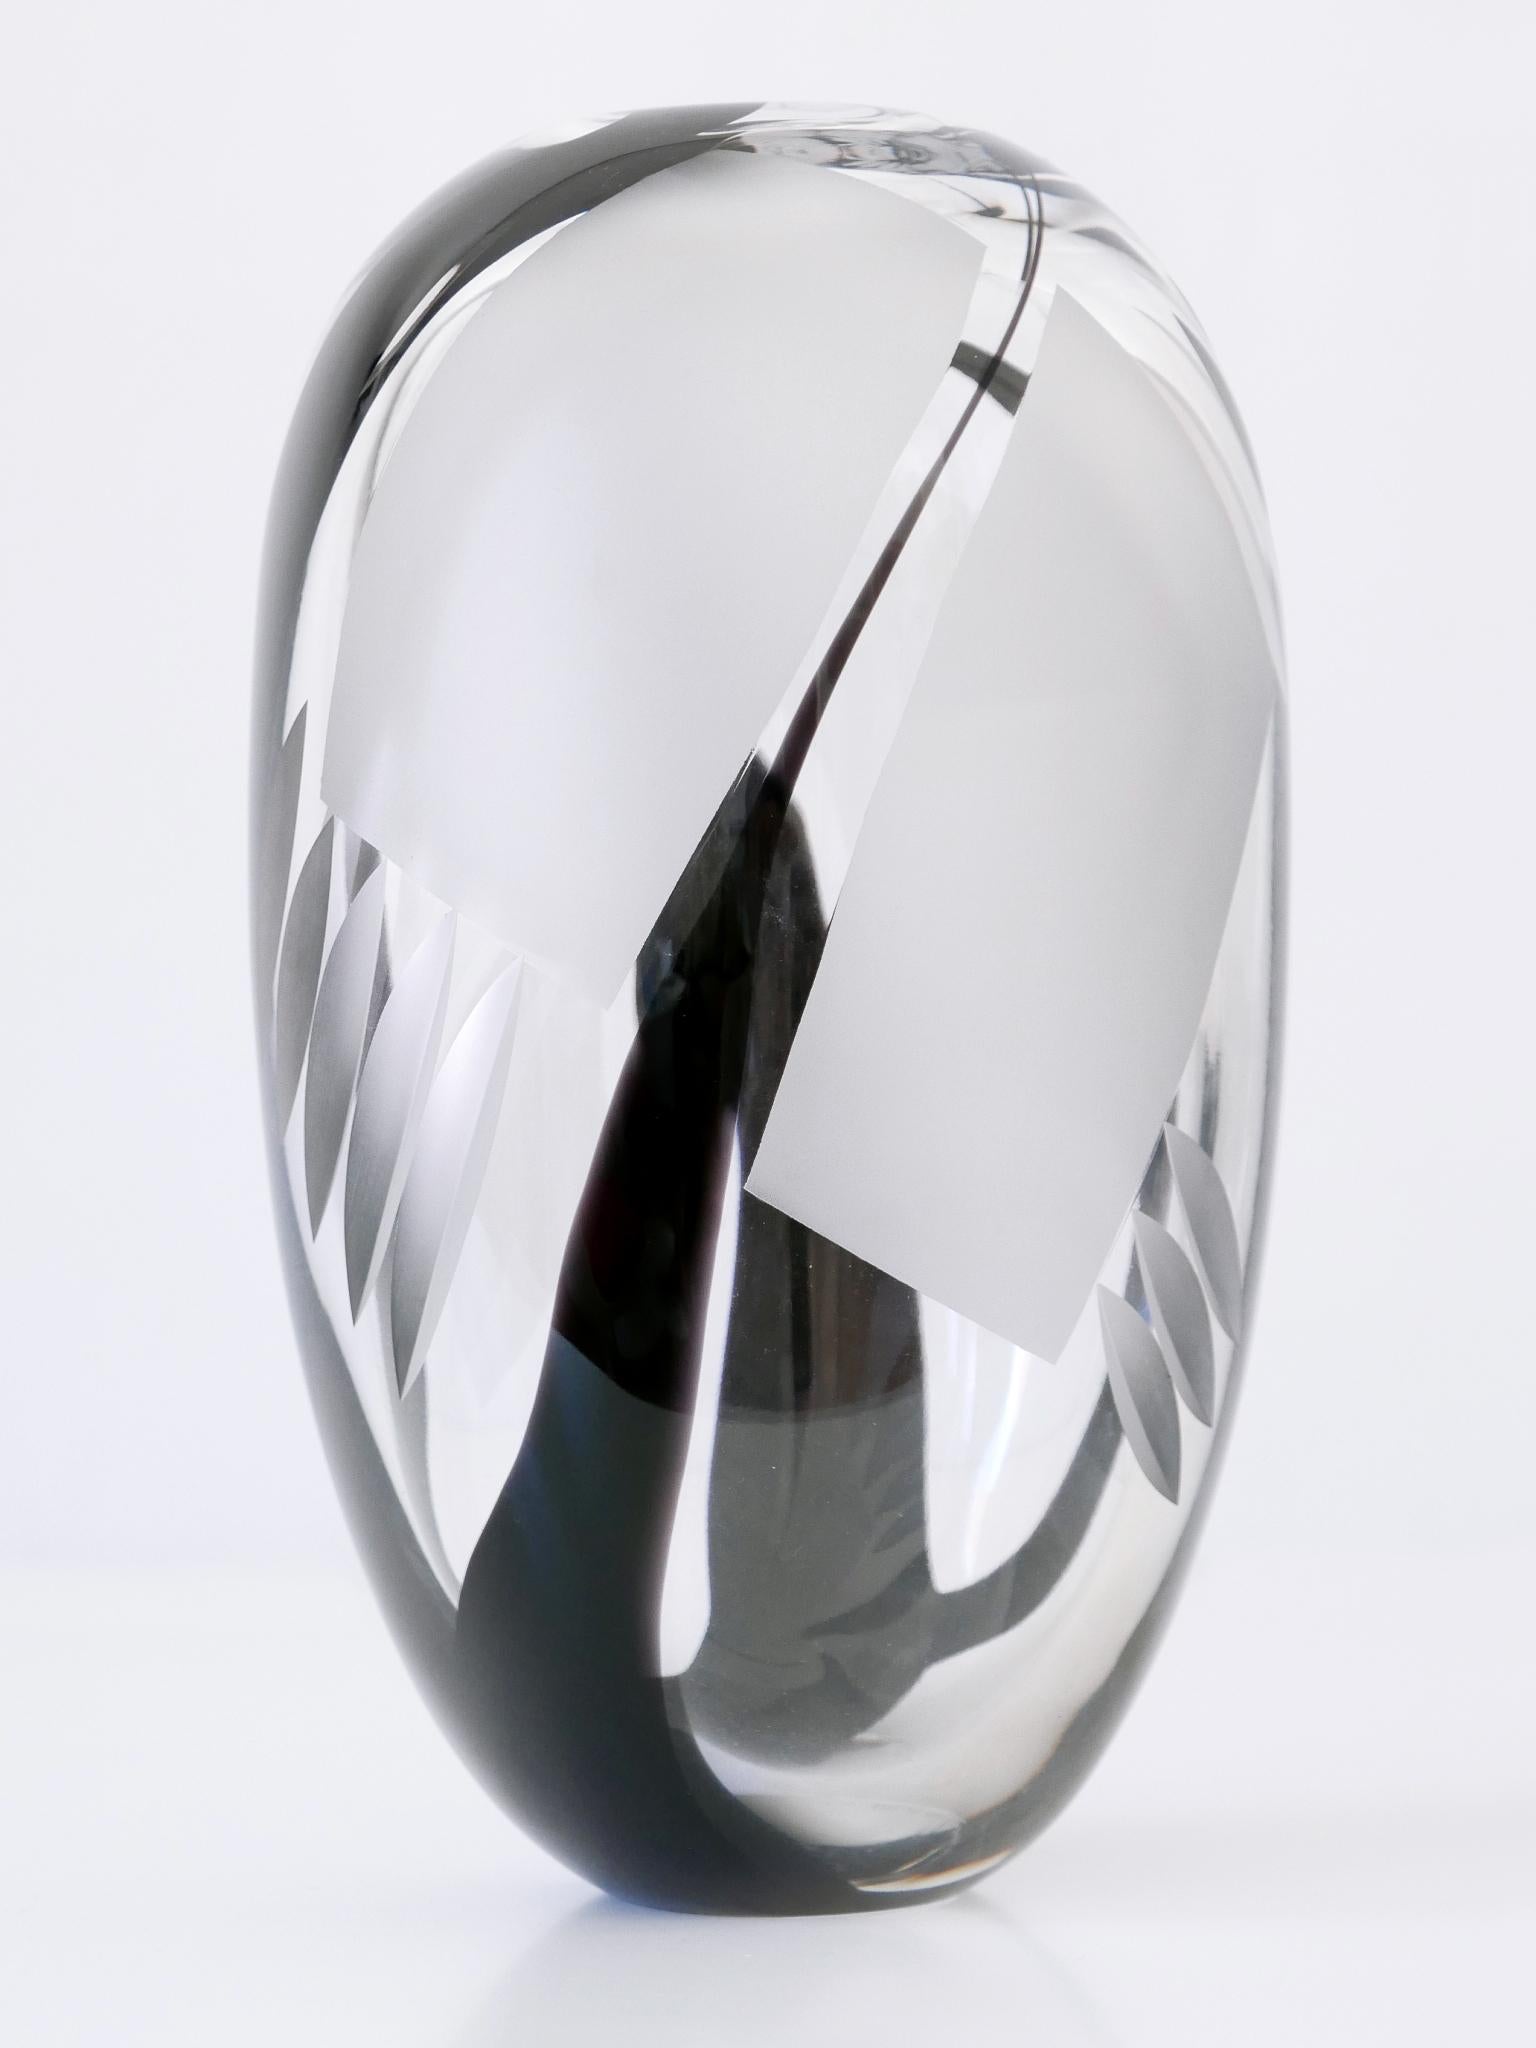 Unique Art Glass Vase by Anna Ehrer for Kosta Boda Sweden 1992 Signed For Sale 2